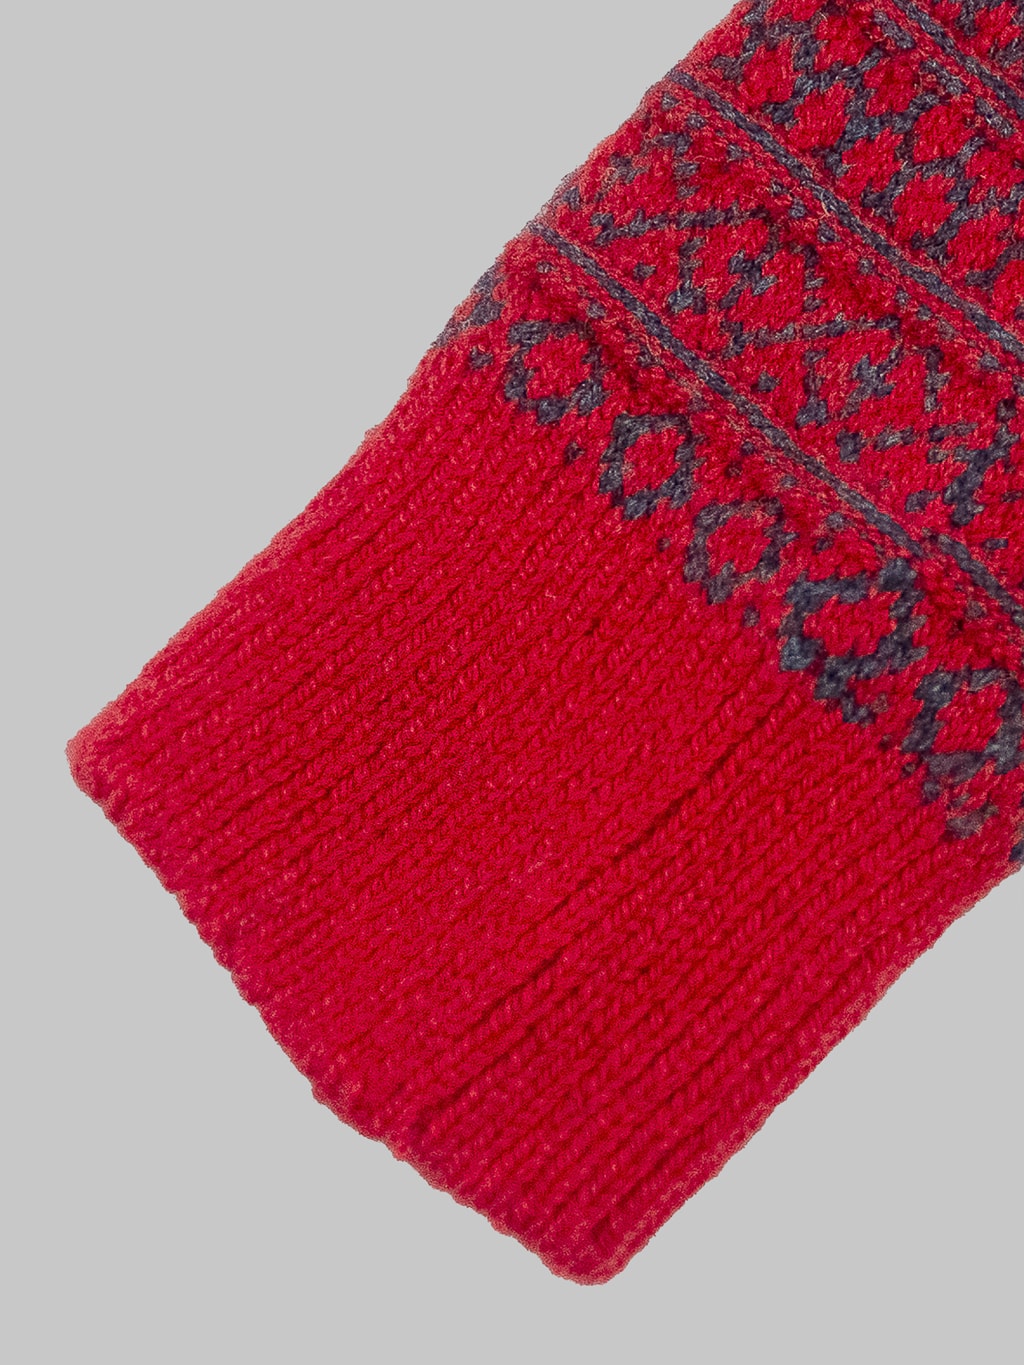 nishiguchi kutsushita oslo wool jacquard socks red elastic band